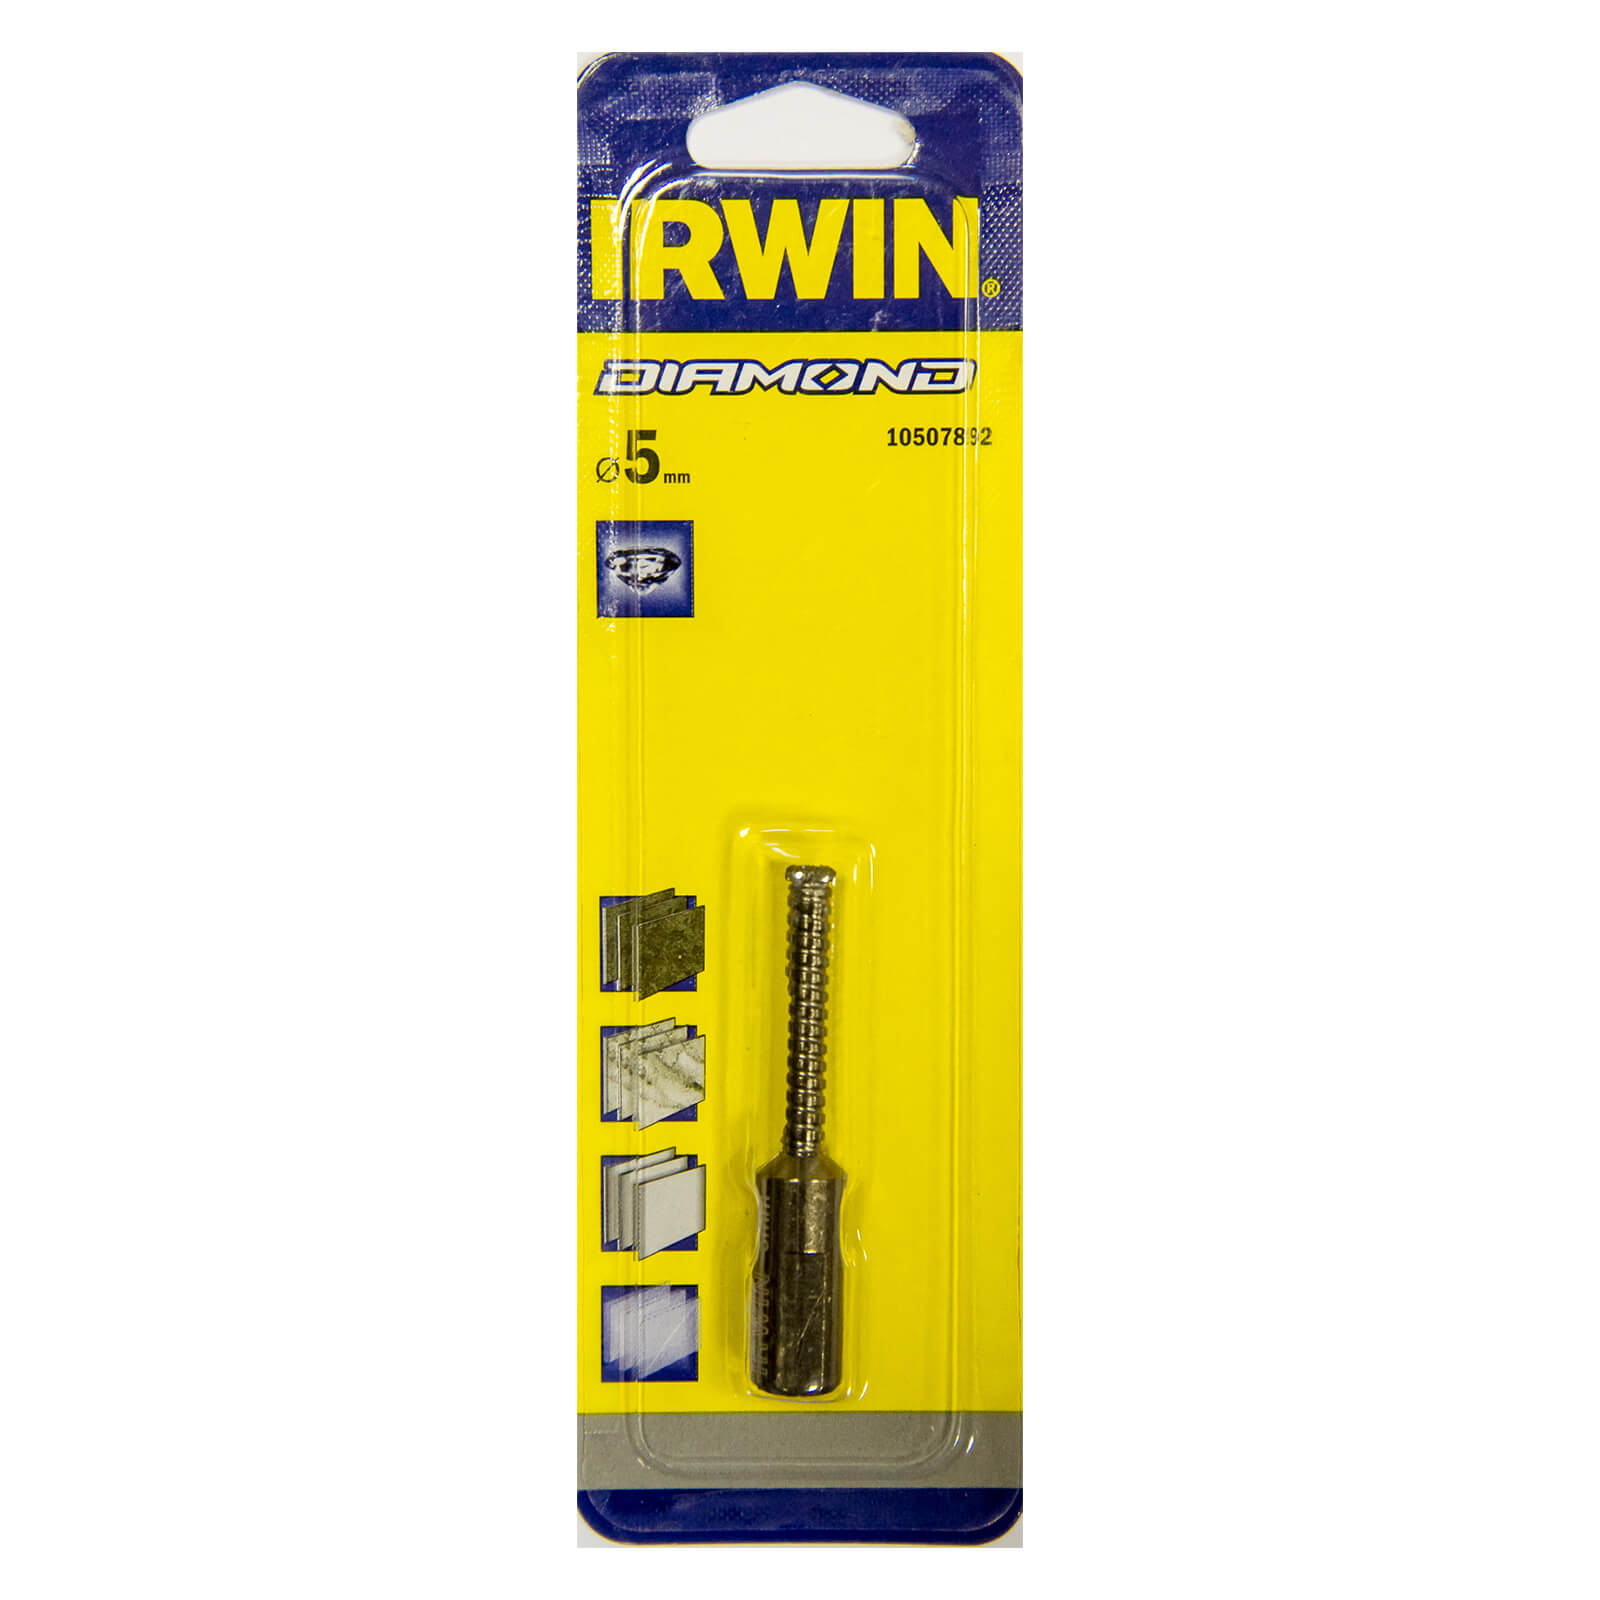 IRWIN Diamond Drill Bit - 5mm